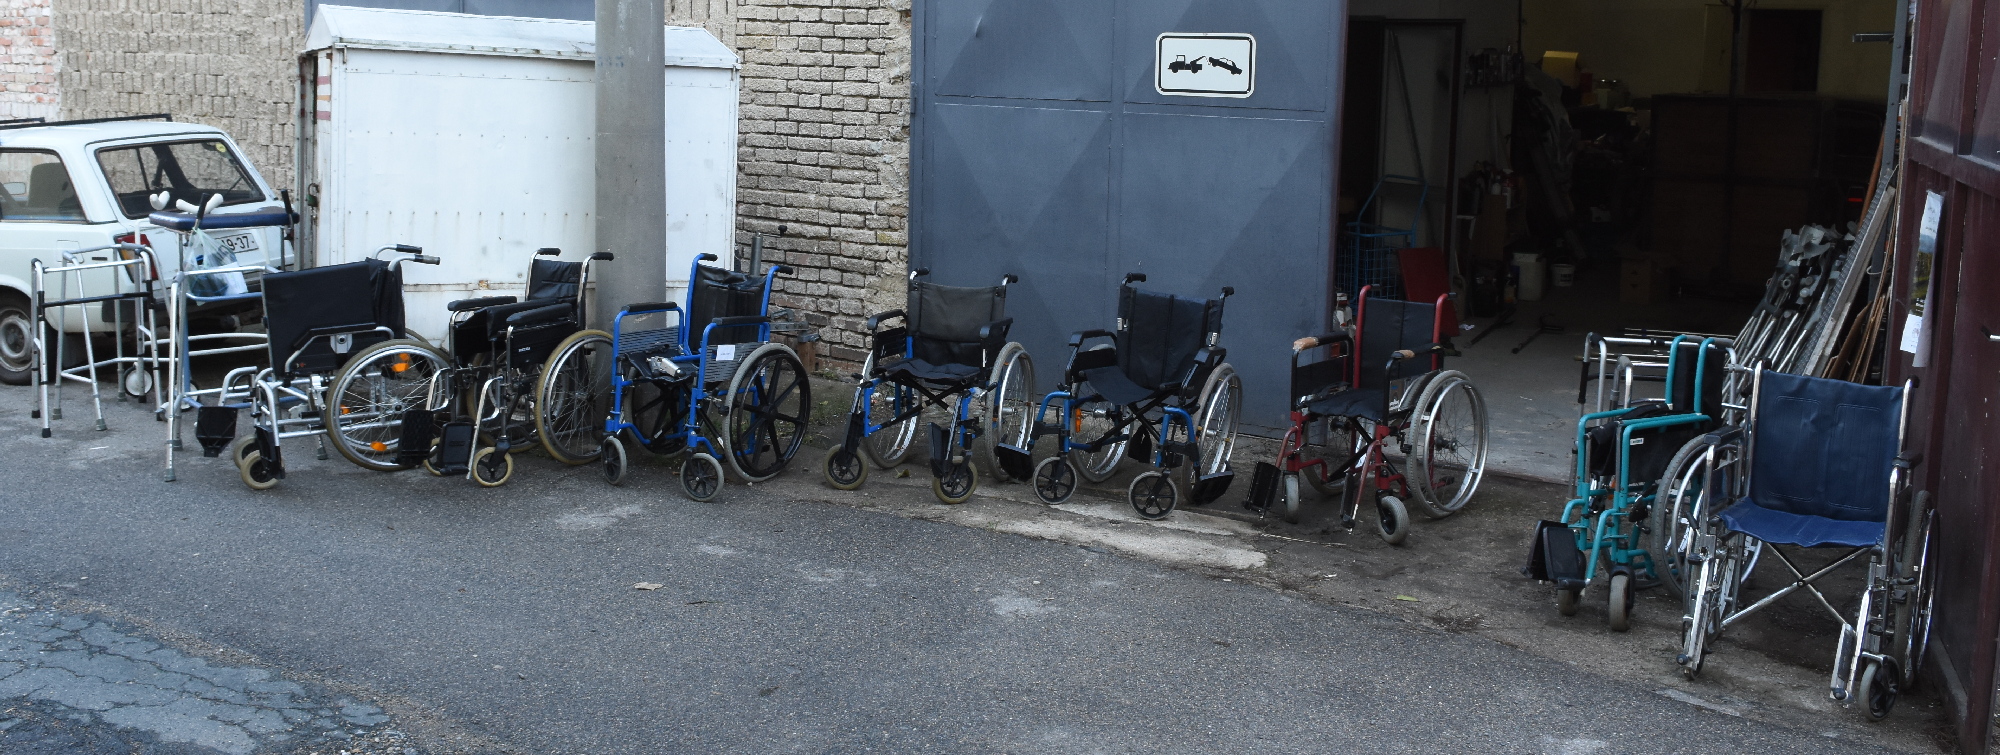 voziky pred garazi